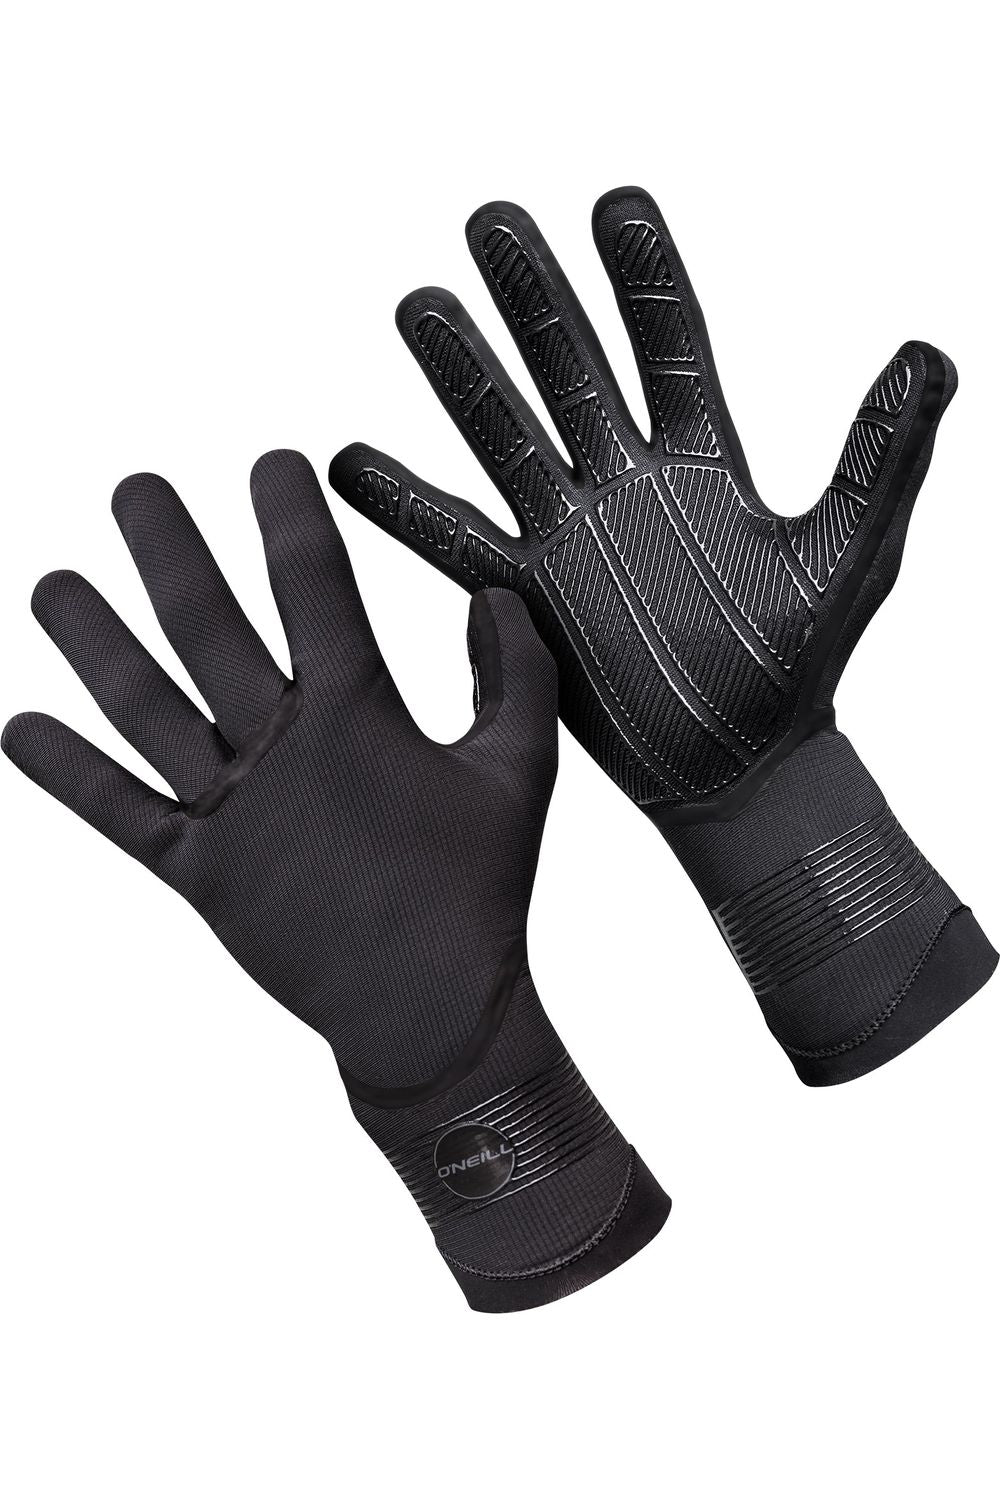 O'Neill 1.5mm Psycho Tech Gloves